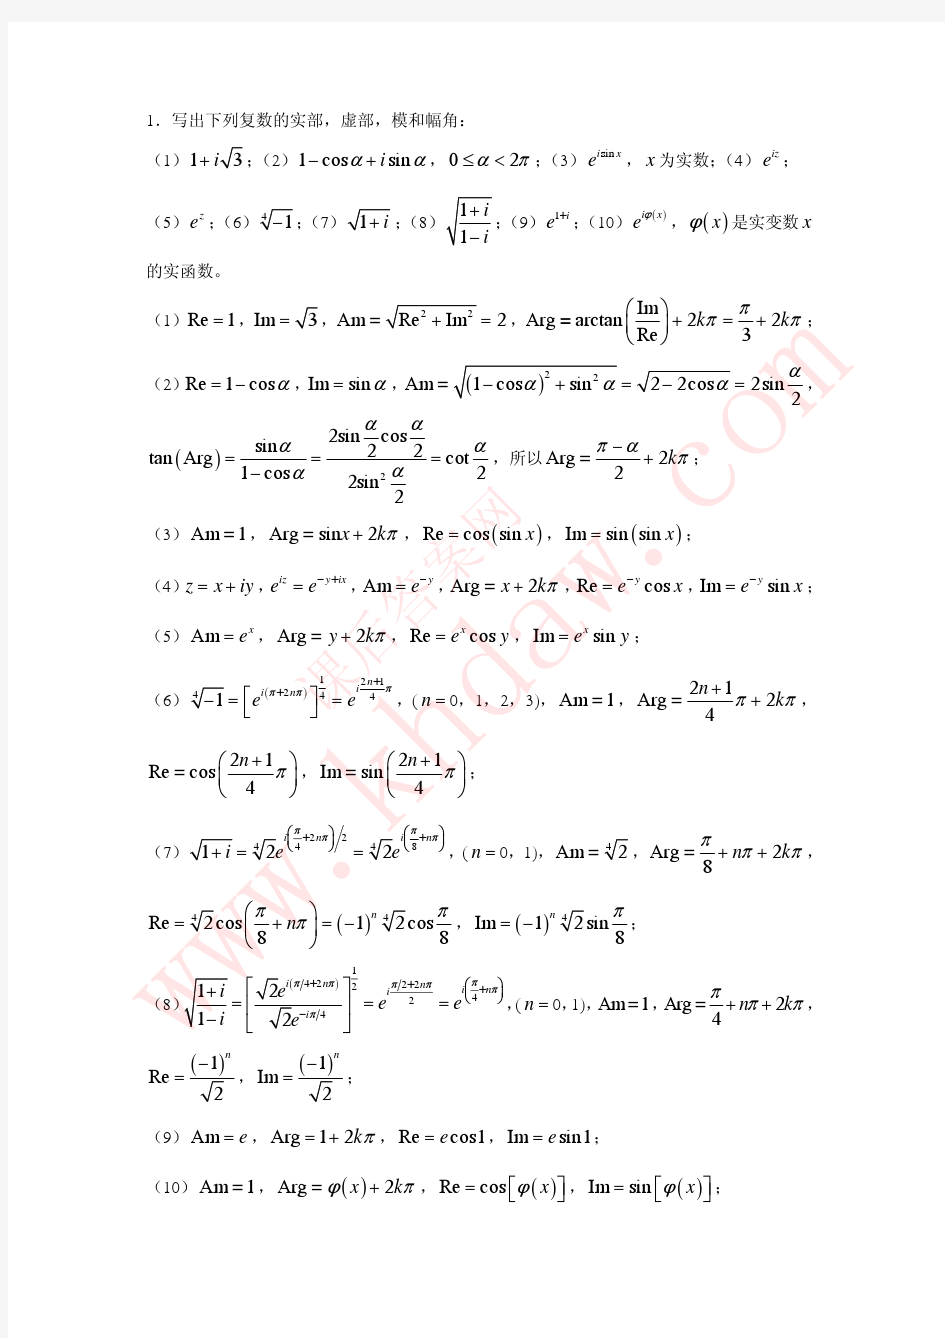 数学物理方法 第二版 (武仁 著) 北京大学出版社 课后答案 习题01-04